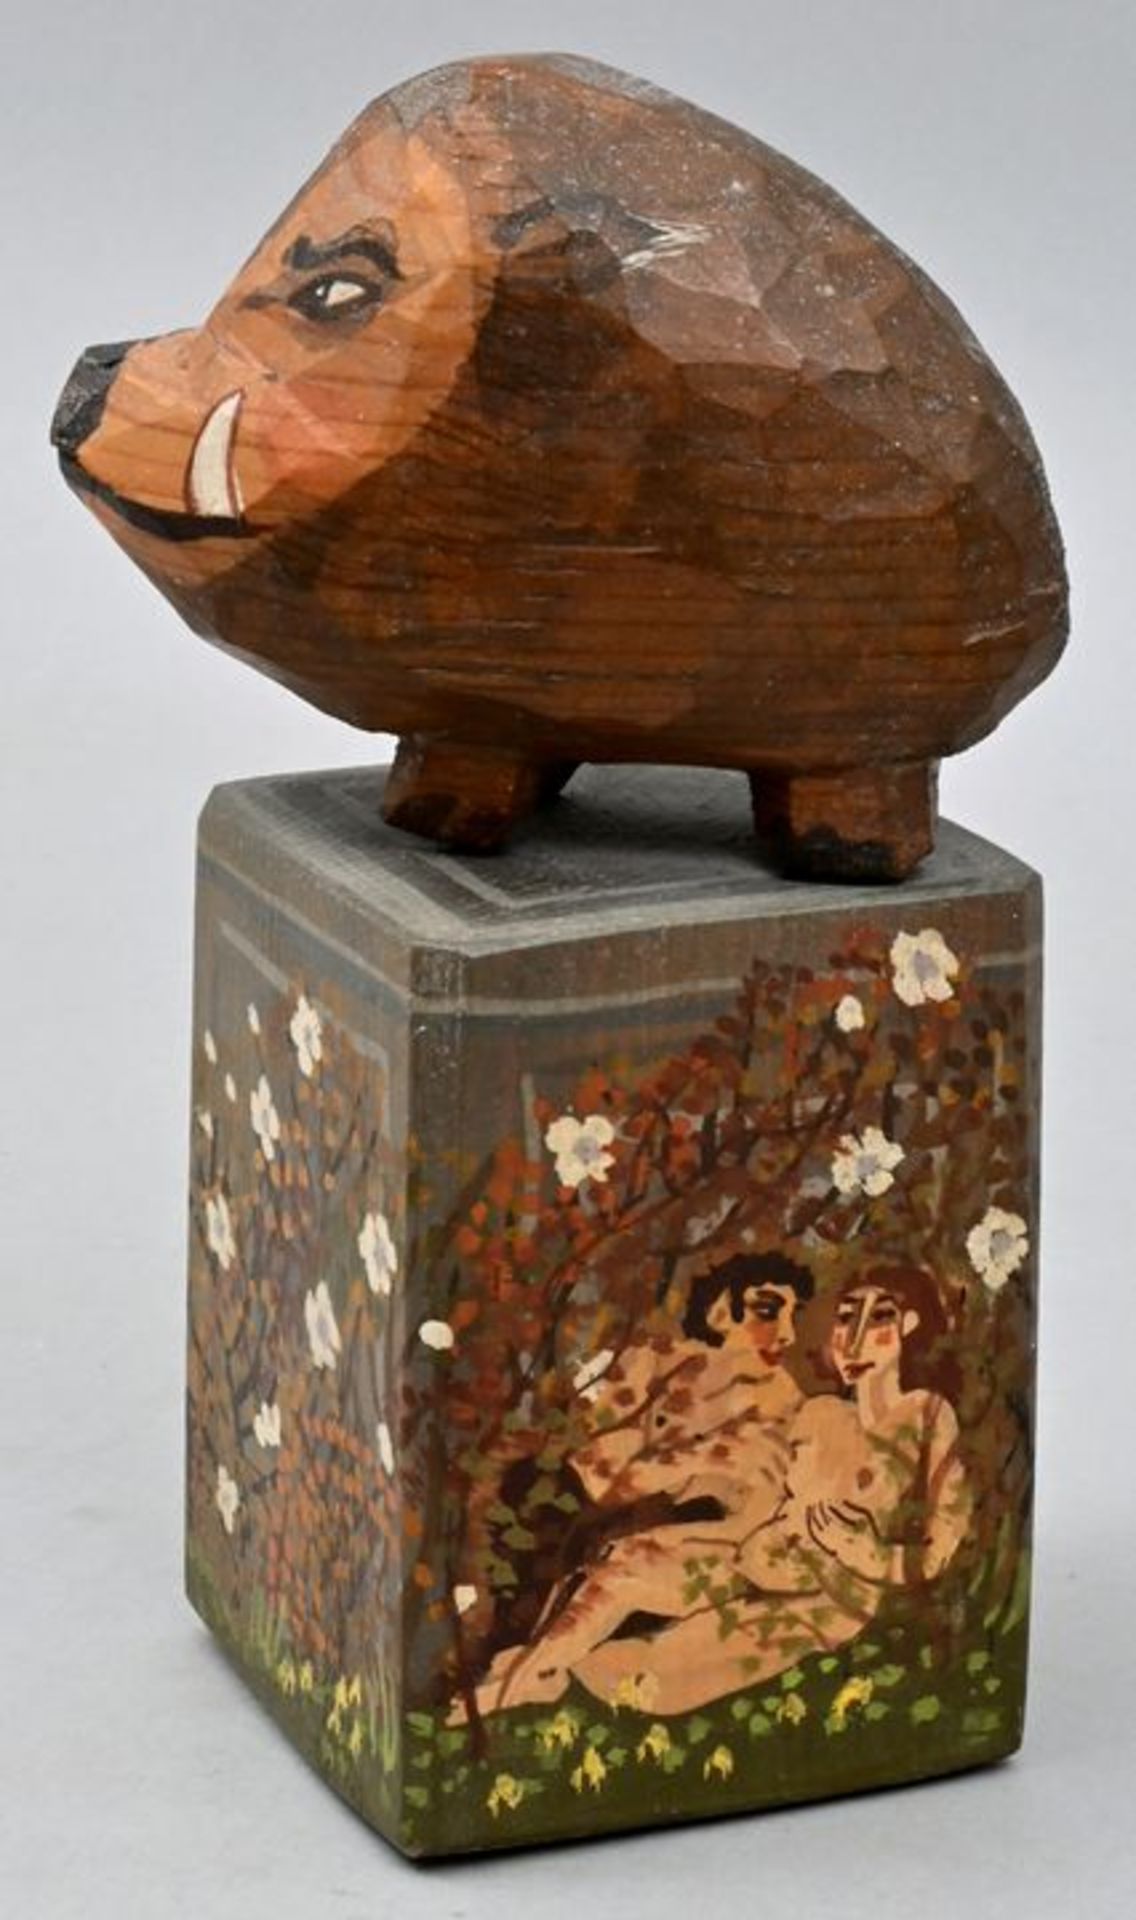 Bräunling, Gottfried, Keiler auf Säule, Holzplastik / wooden sculpture